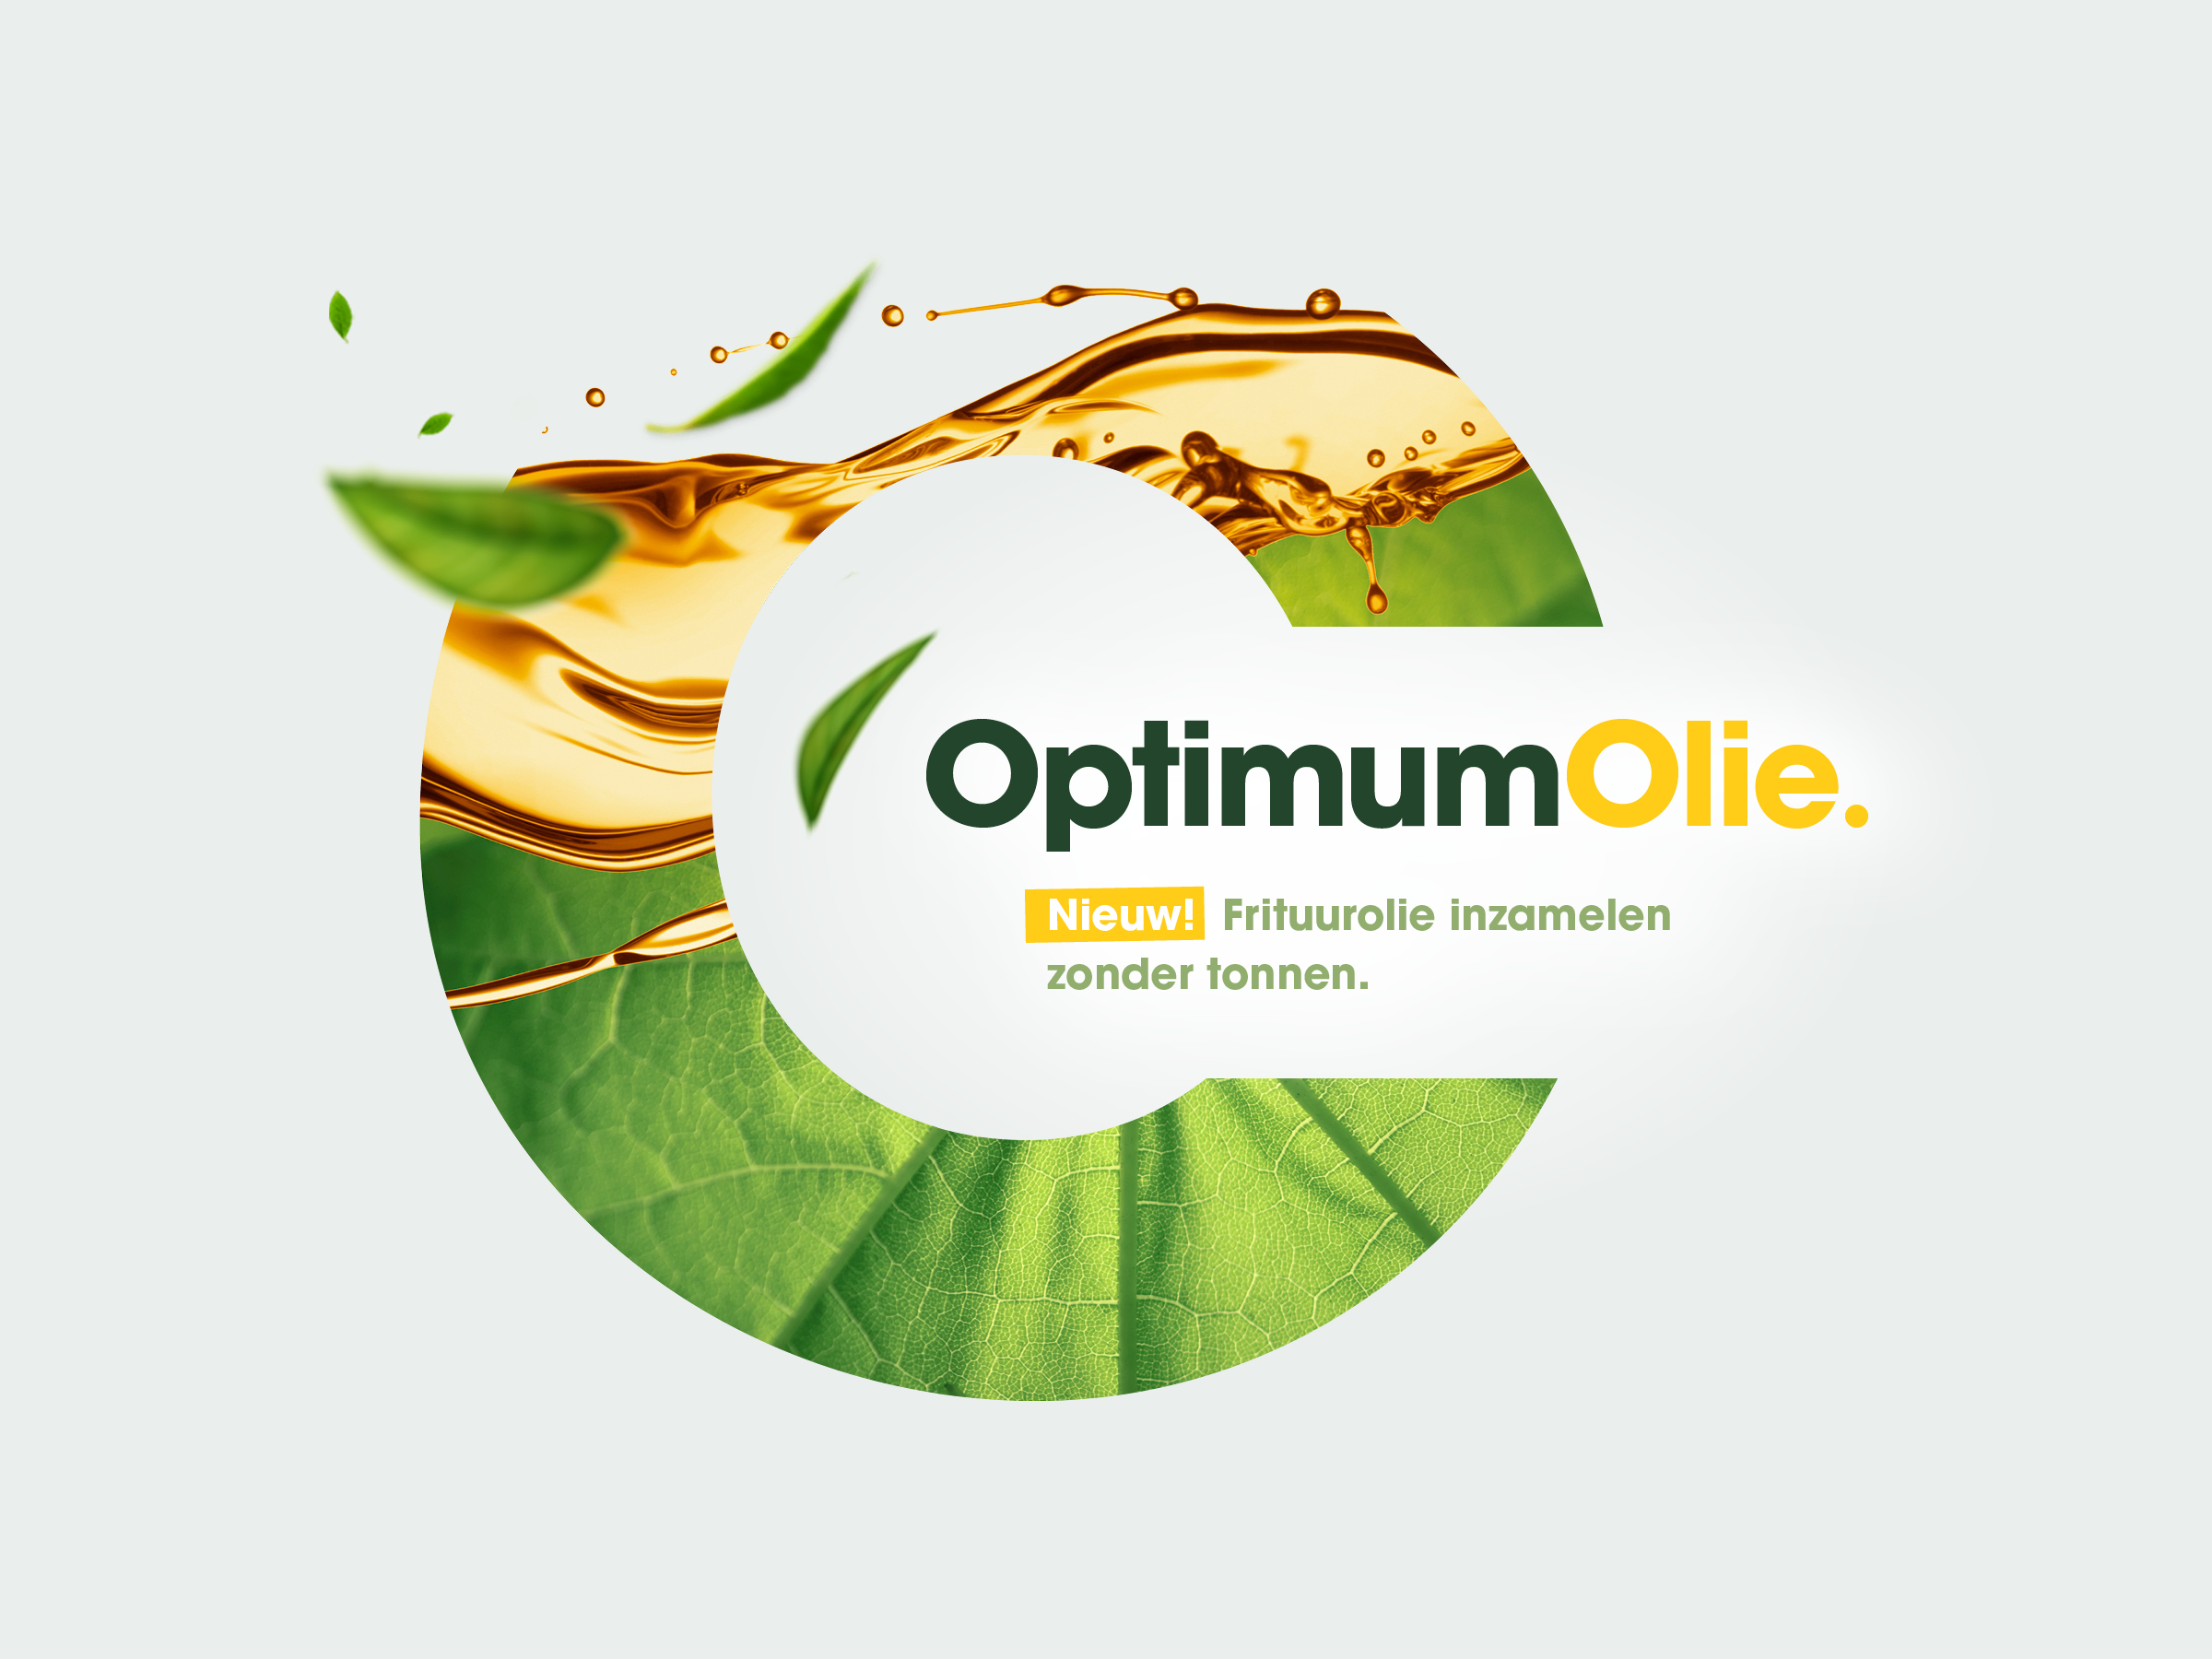 OptimumOlie - duurzamer, hygiënischer, schoner en voordeliger.